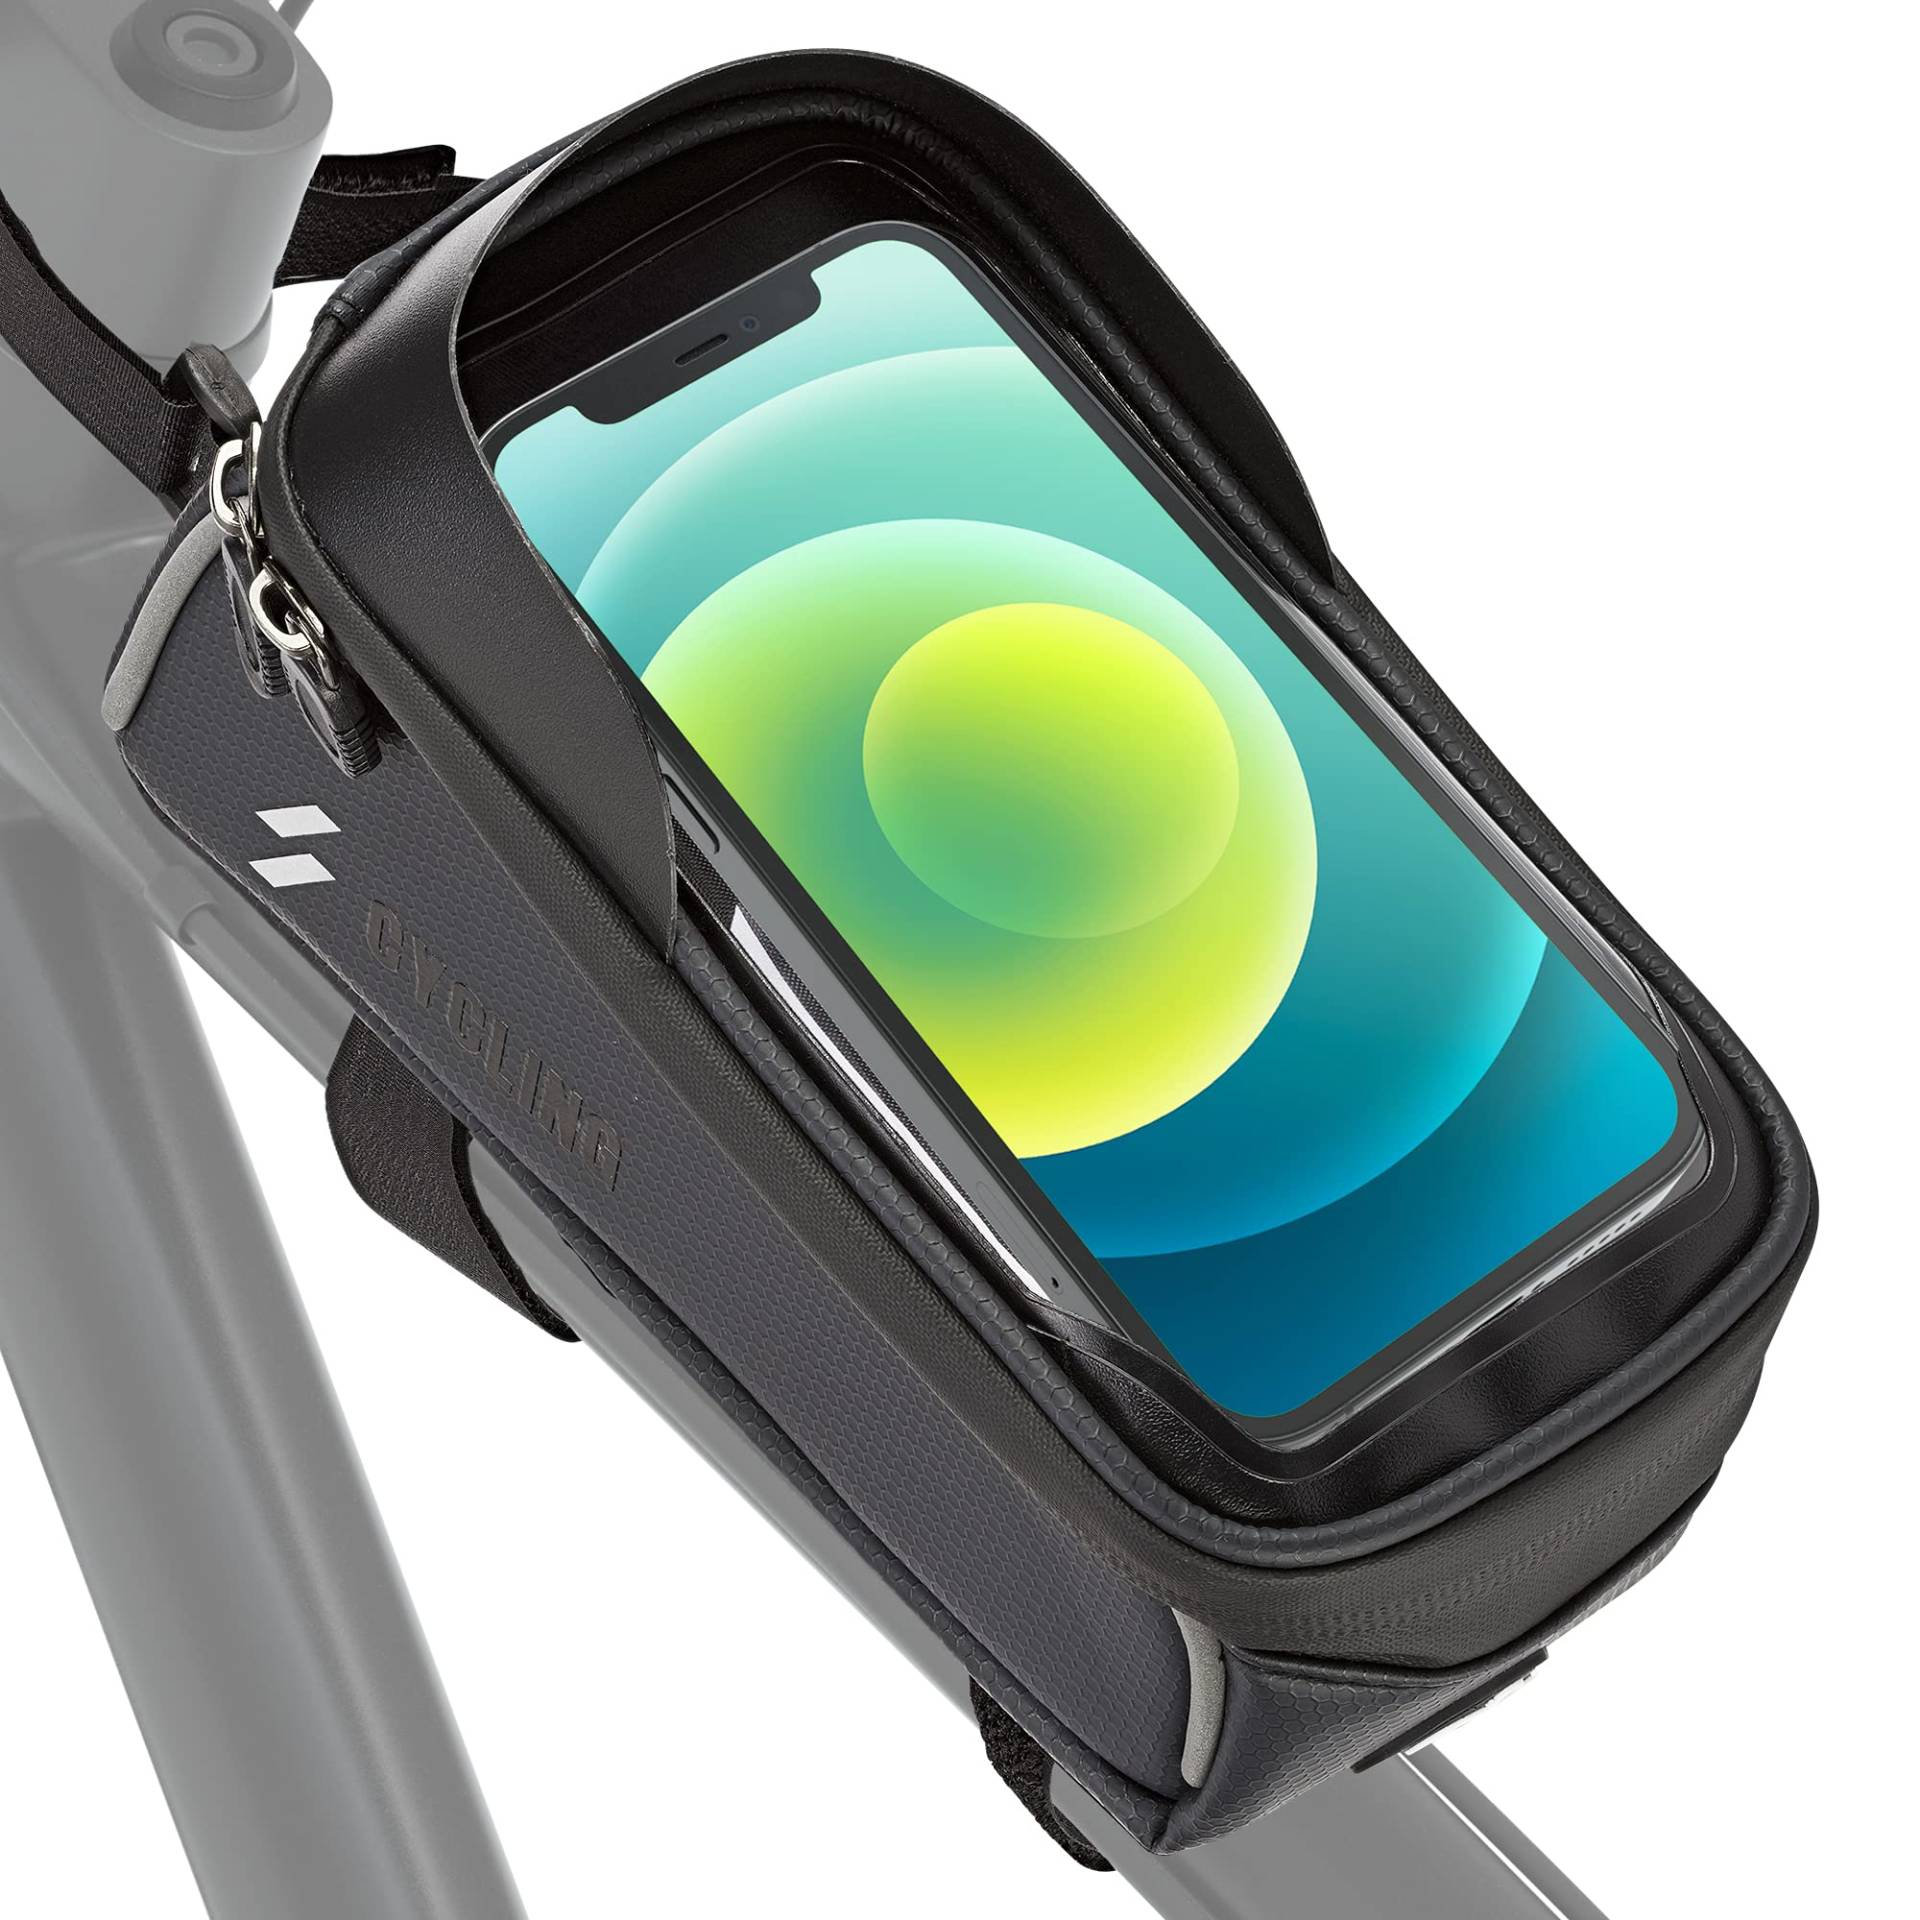 EAZY CASE Fahrrad Rahmentasche, wasserfeste Fahrradtasche mit Smartphone Halterung, Handyhalterung mit Touchscreen perfekt zur Navigation auf dem Rad von EAZY CASE